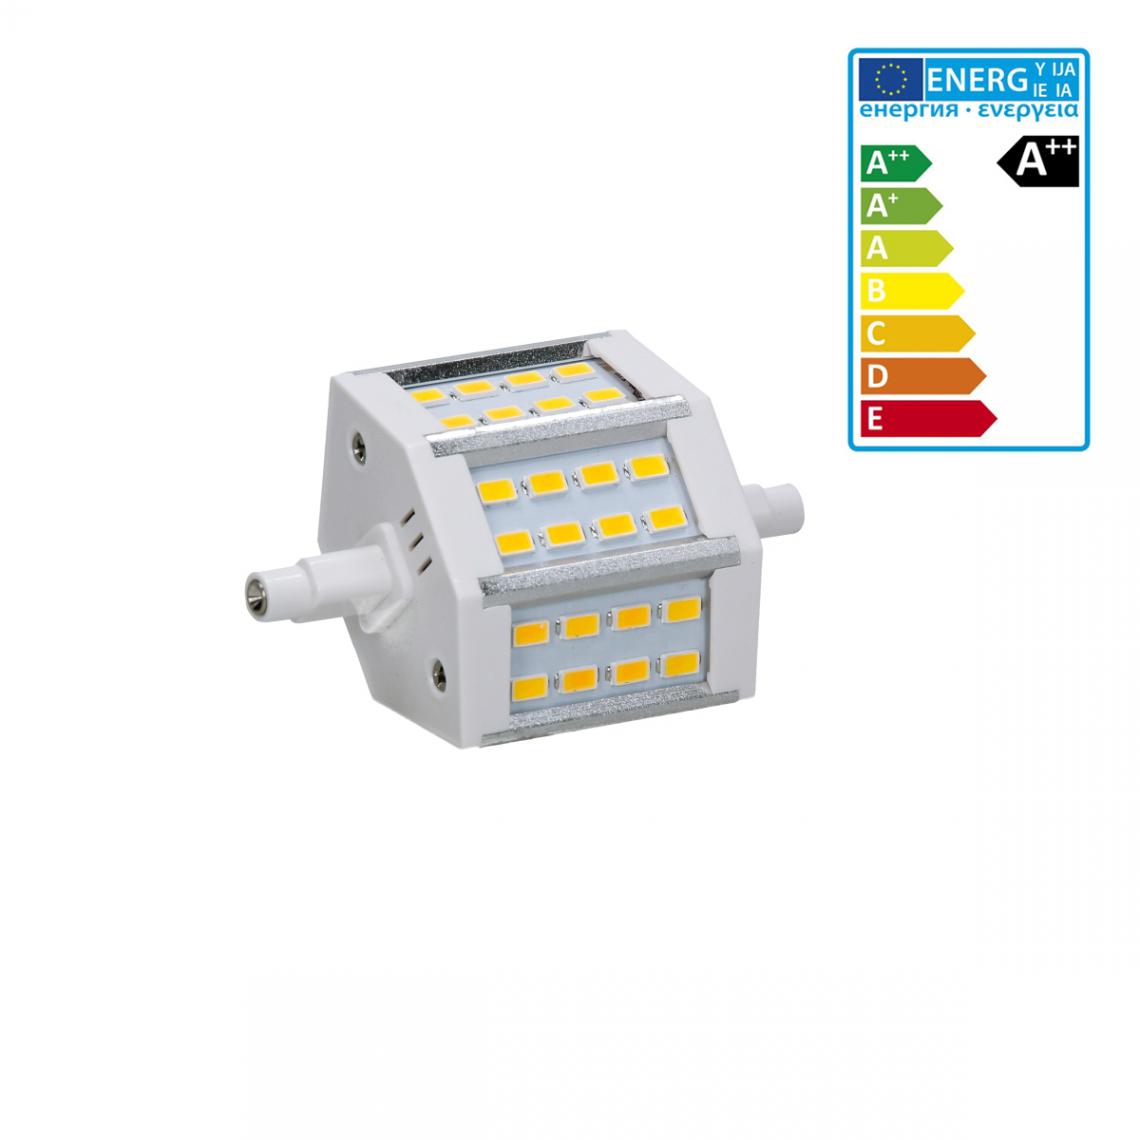 Ecd Germany - ECD Germany R7S Lampe LED 5W 78mm 360 lumens SMD 360 5730 AC 220-240 angle de faisceau 180 ° remplace 35W ampoule halogène réglable blanc neutre - Tubes et néons